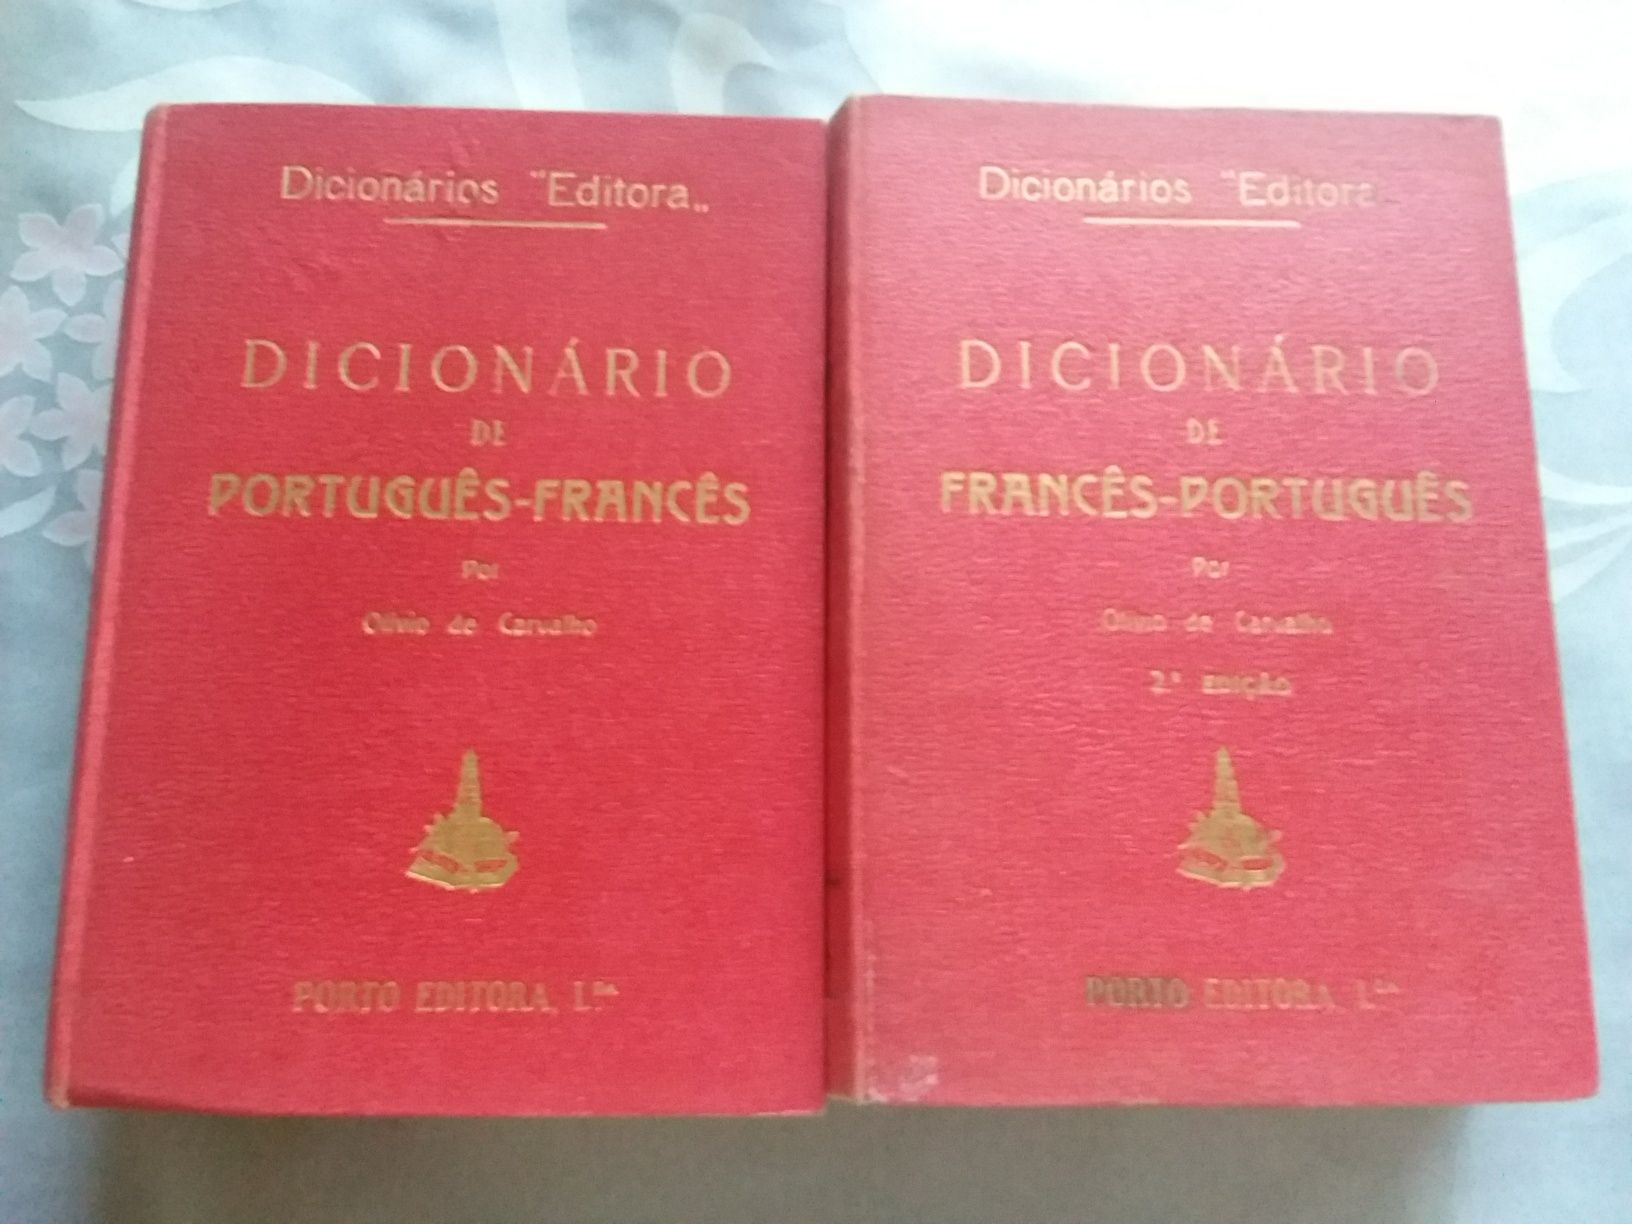 Dicionário de Português-Francês mais o Dicionario de Francês-Português